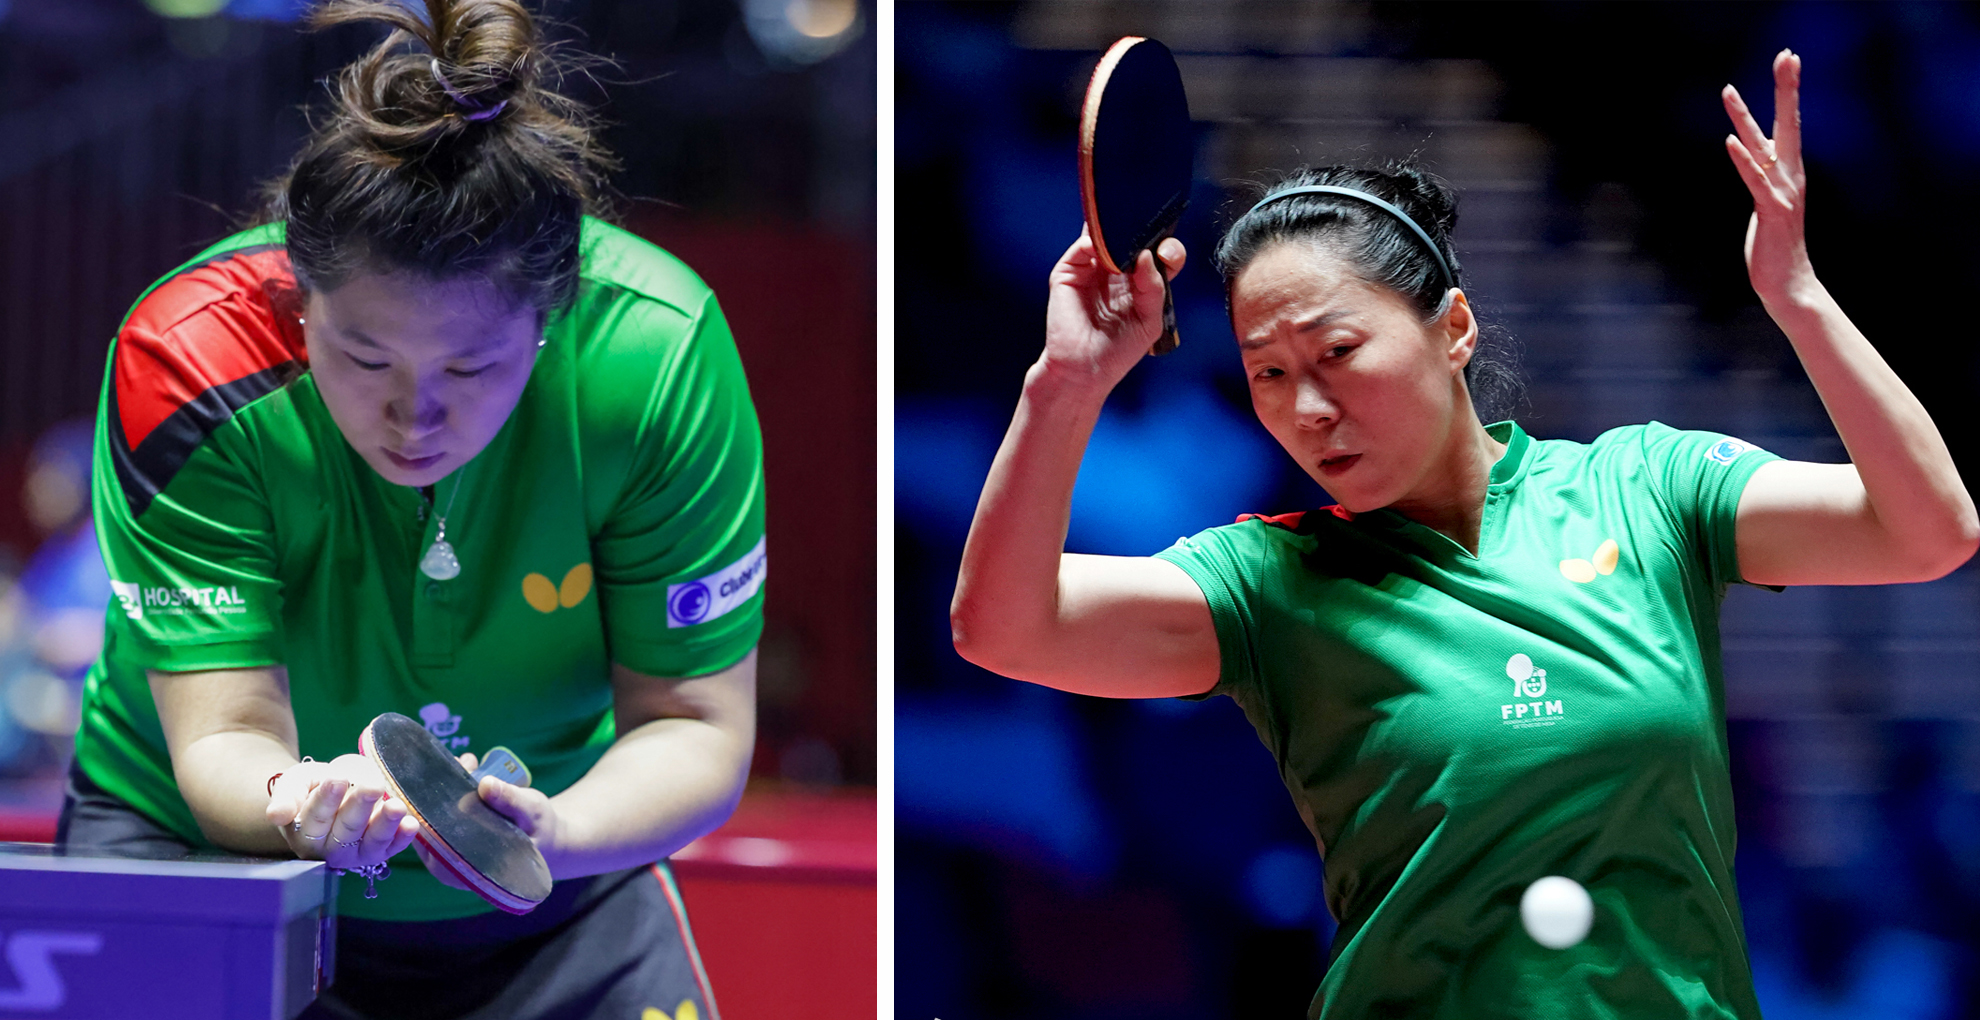 Fu Yu e Shao Jieni vencem na Qualificação Olímpica